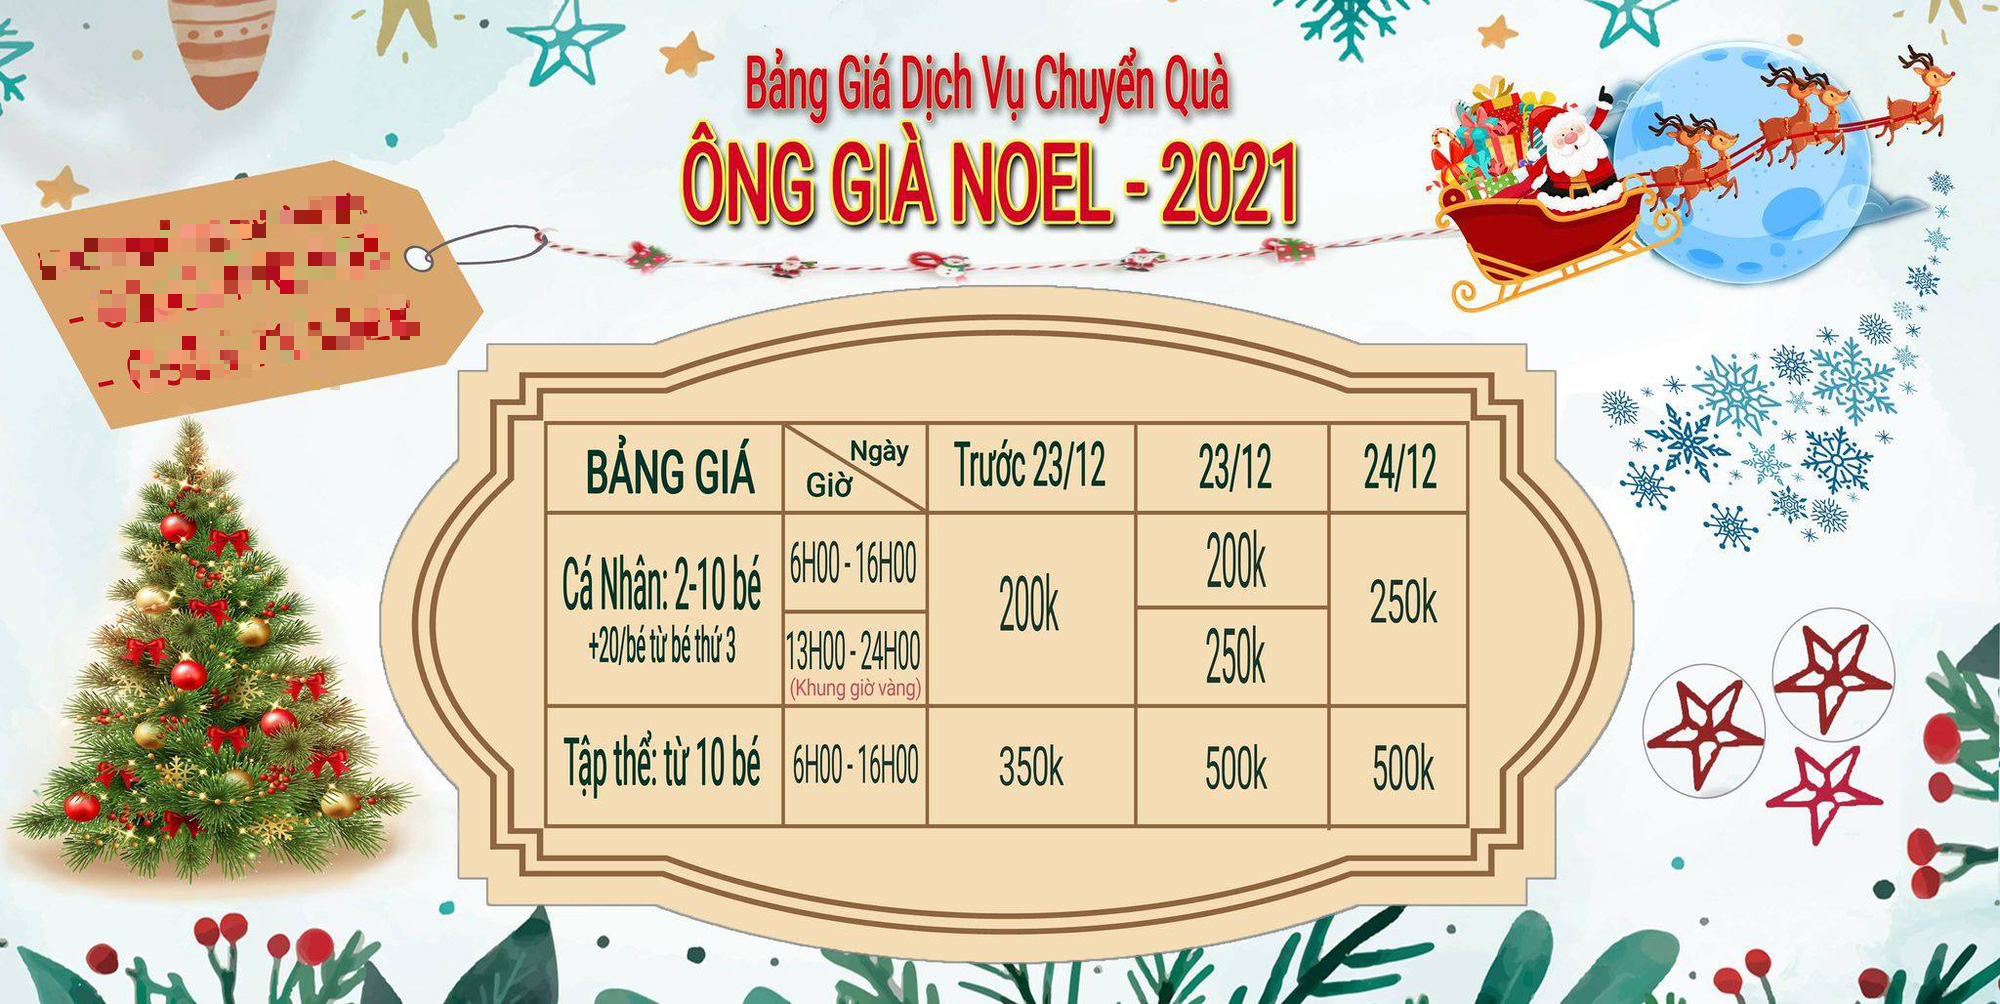 Bảng giá dịch vụ Ông già Noel tặng quà năm 2020 - Ảnh 1.